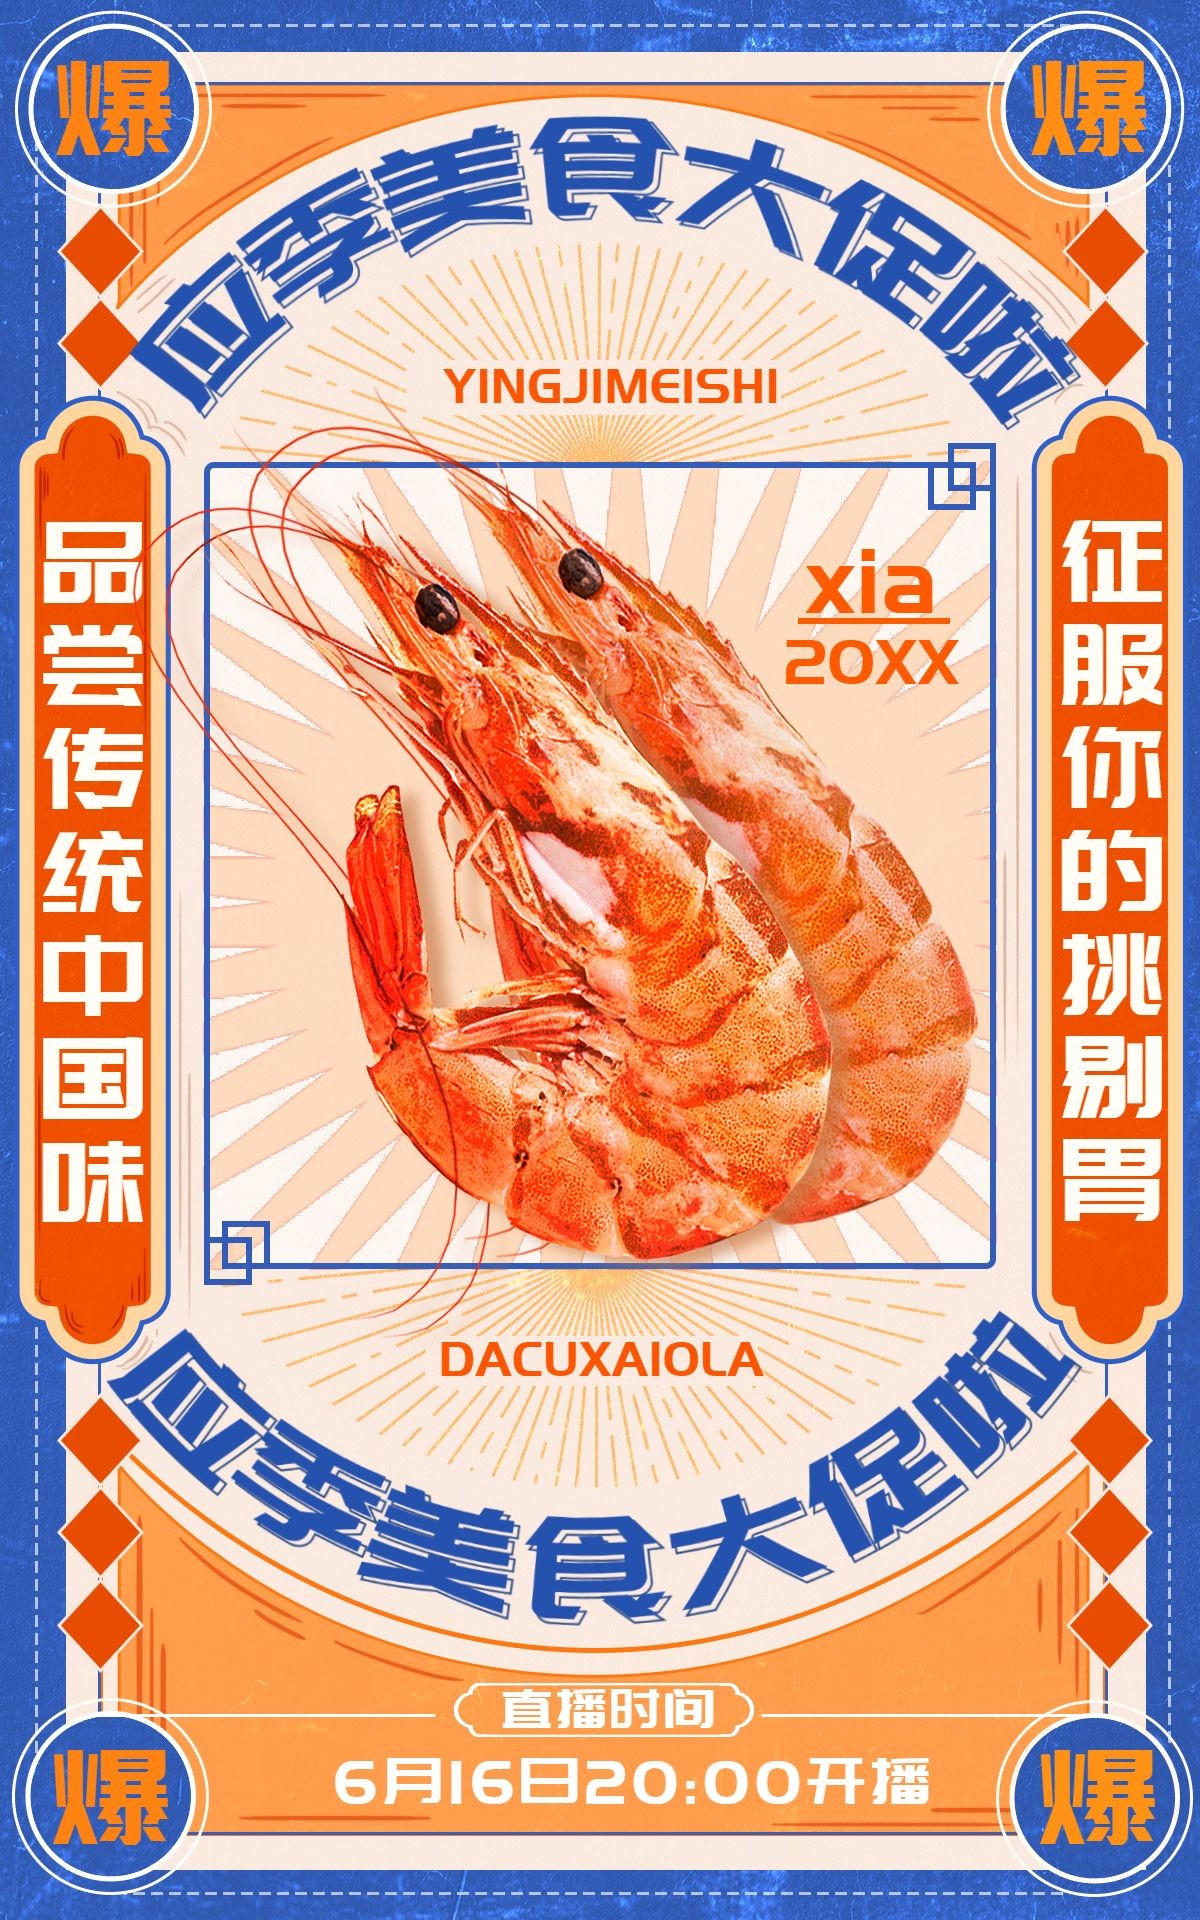 国潮618食品海鲜明虾龙虾直播活动海报预览效果